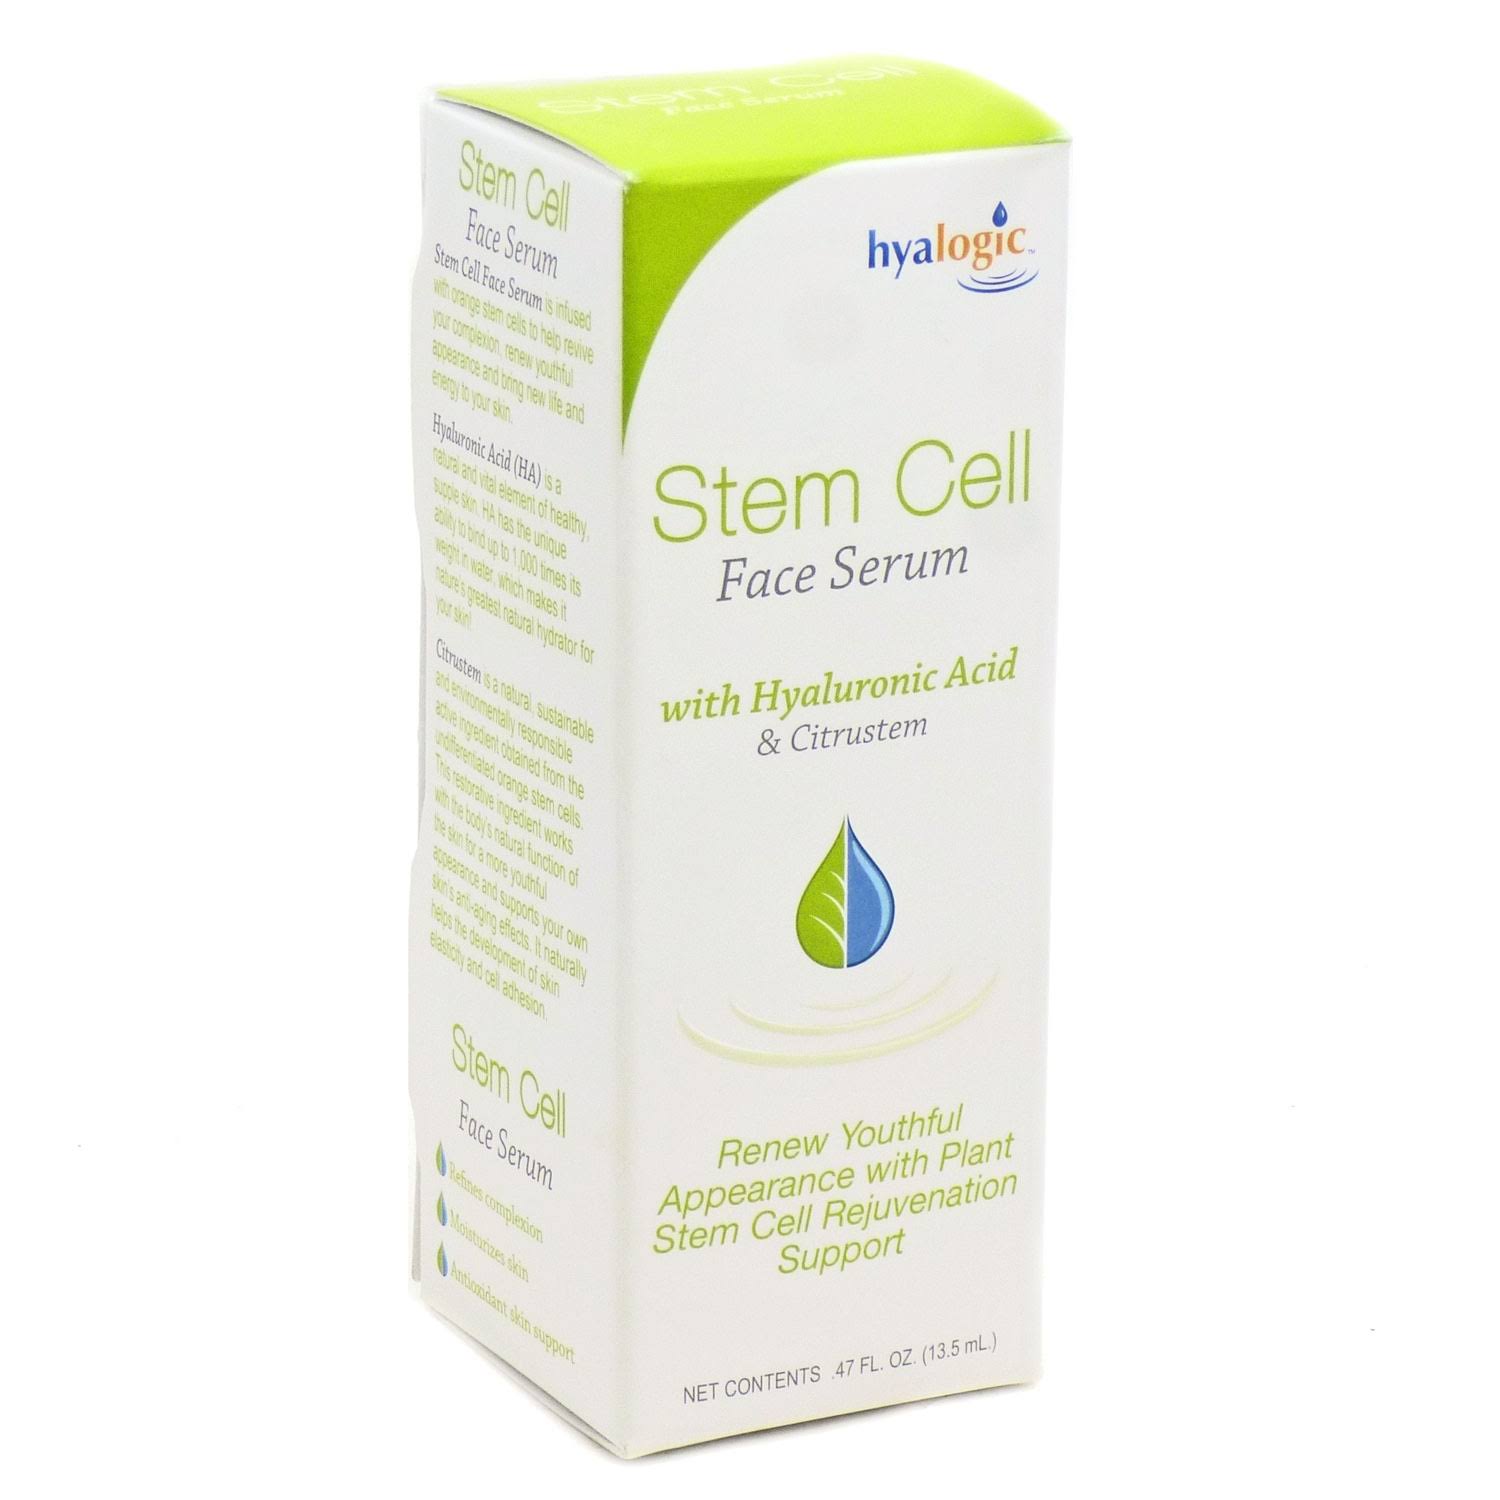 Hyalogic Stem Cell Face Serum - 0.47oz